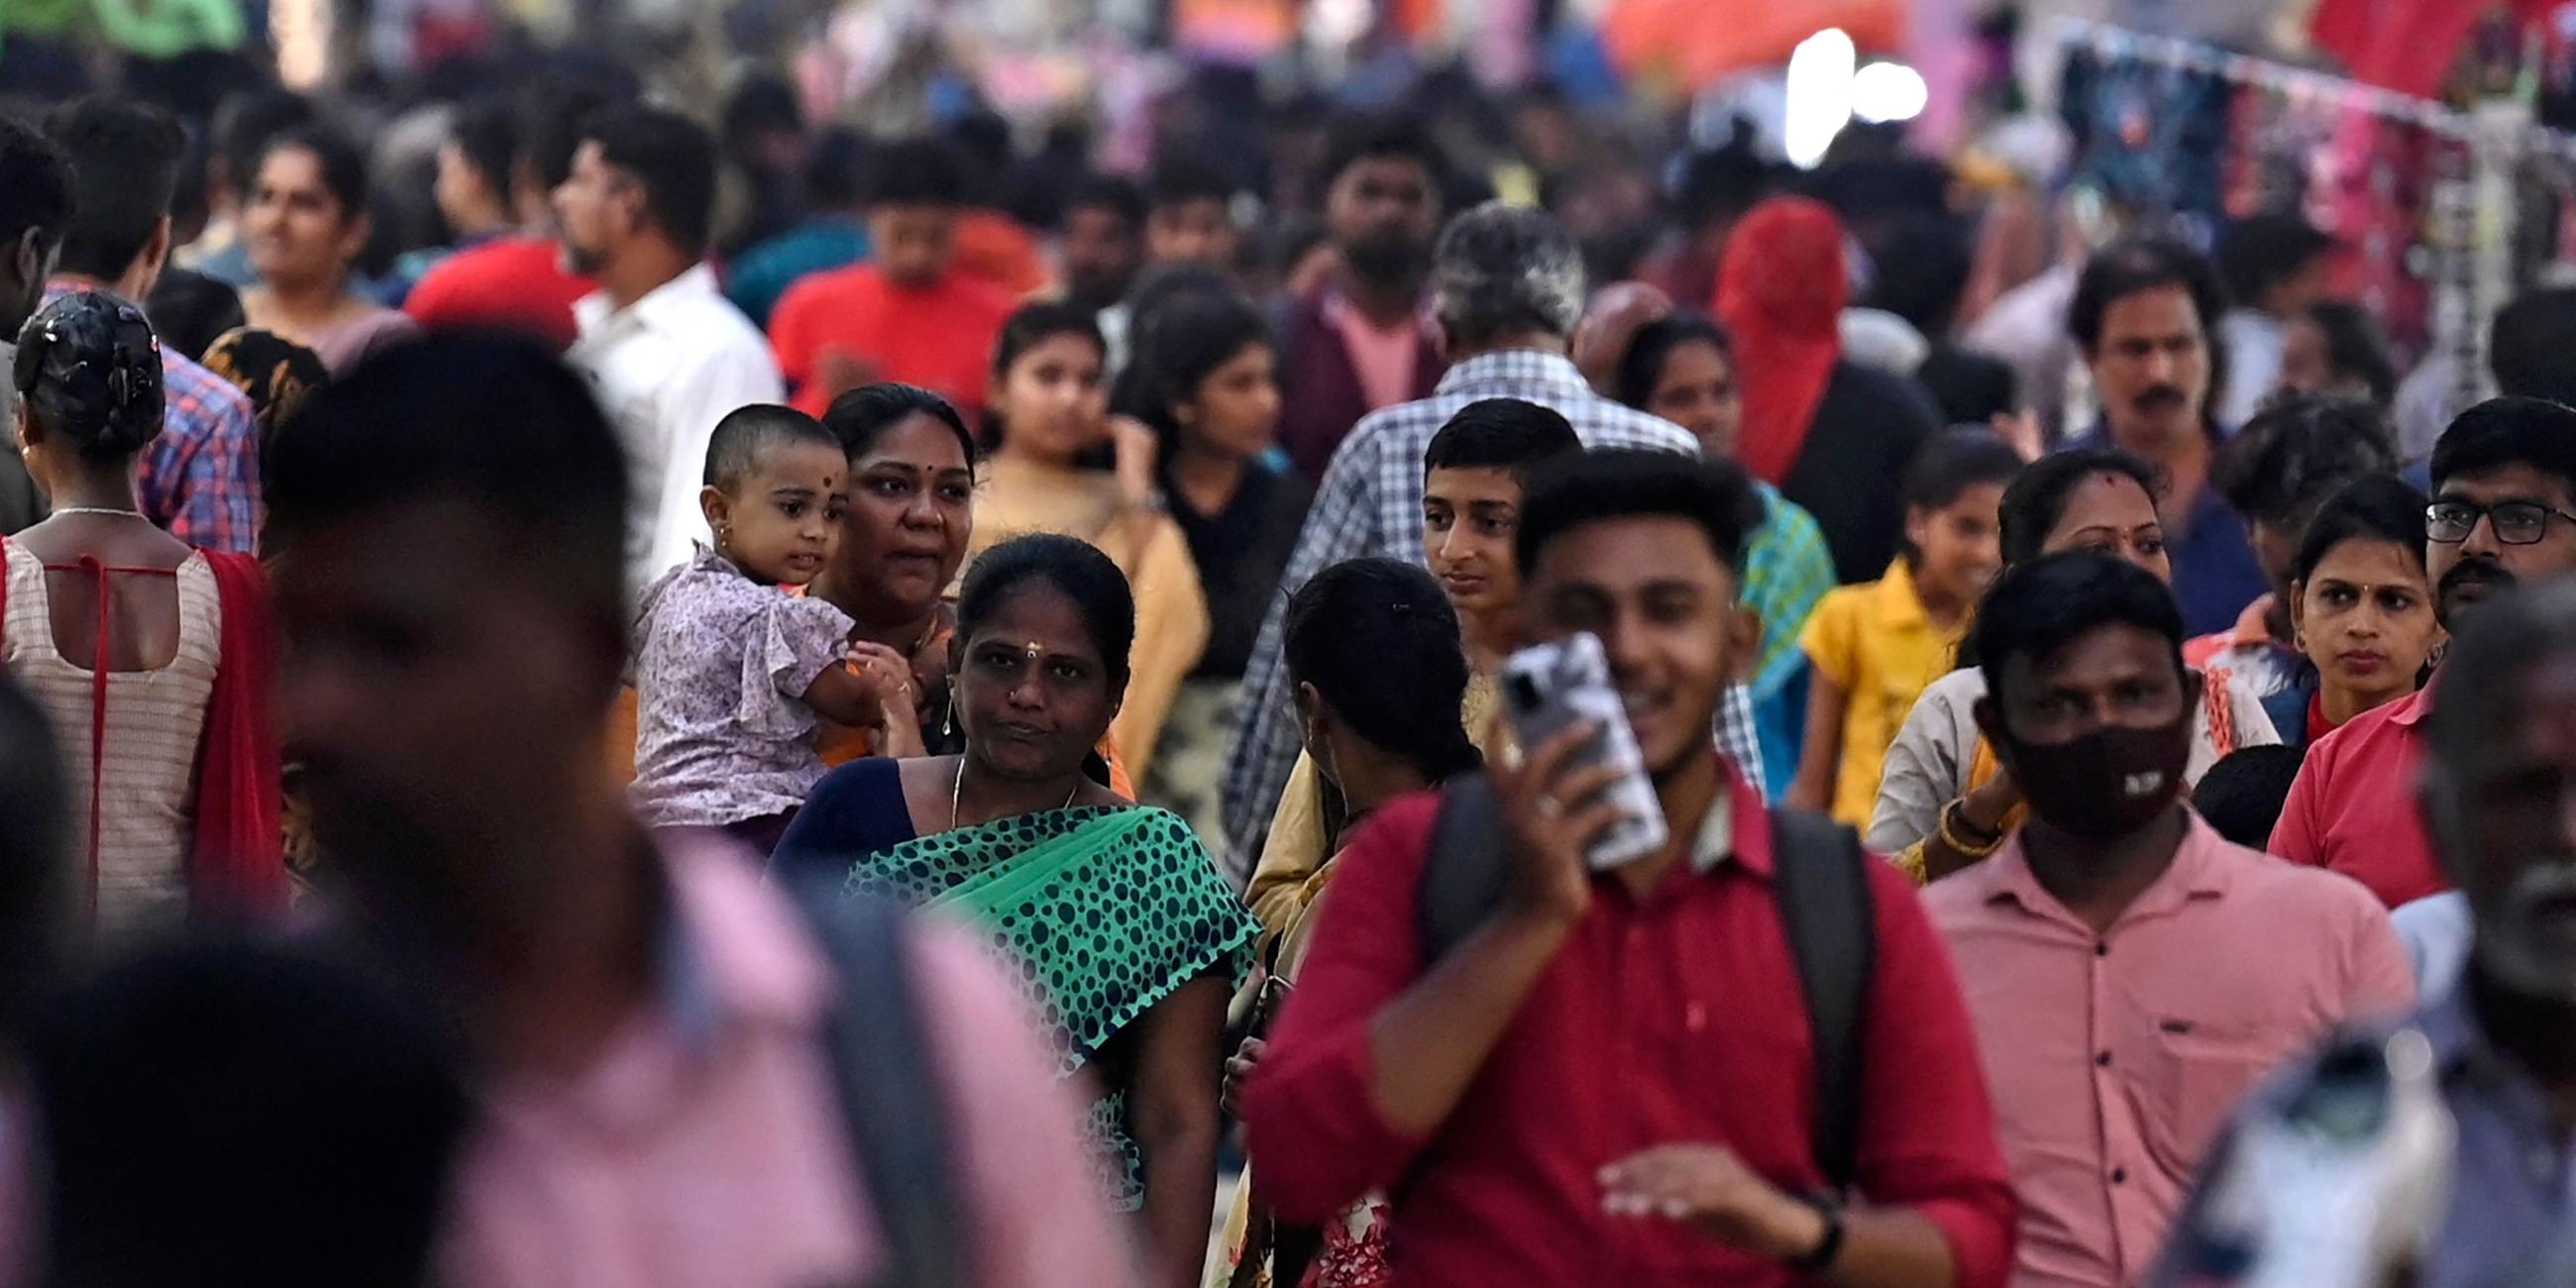 Menschen gehen durch eine überfüllte Geschäftsstraße in Chennai, Indien.